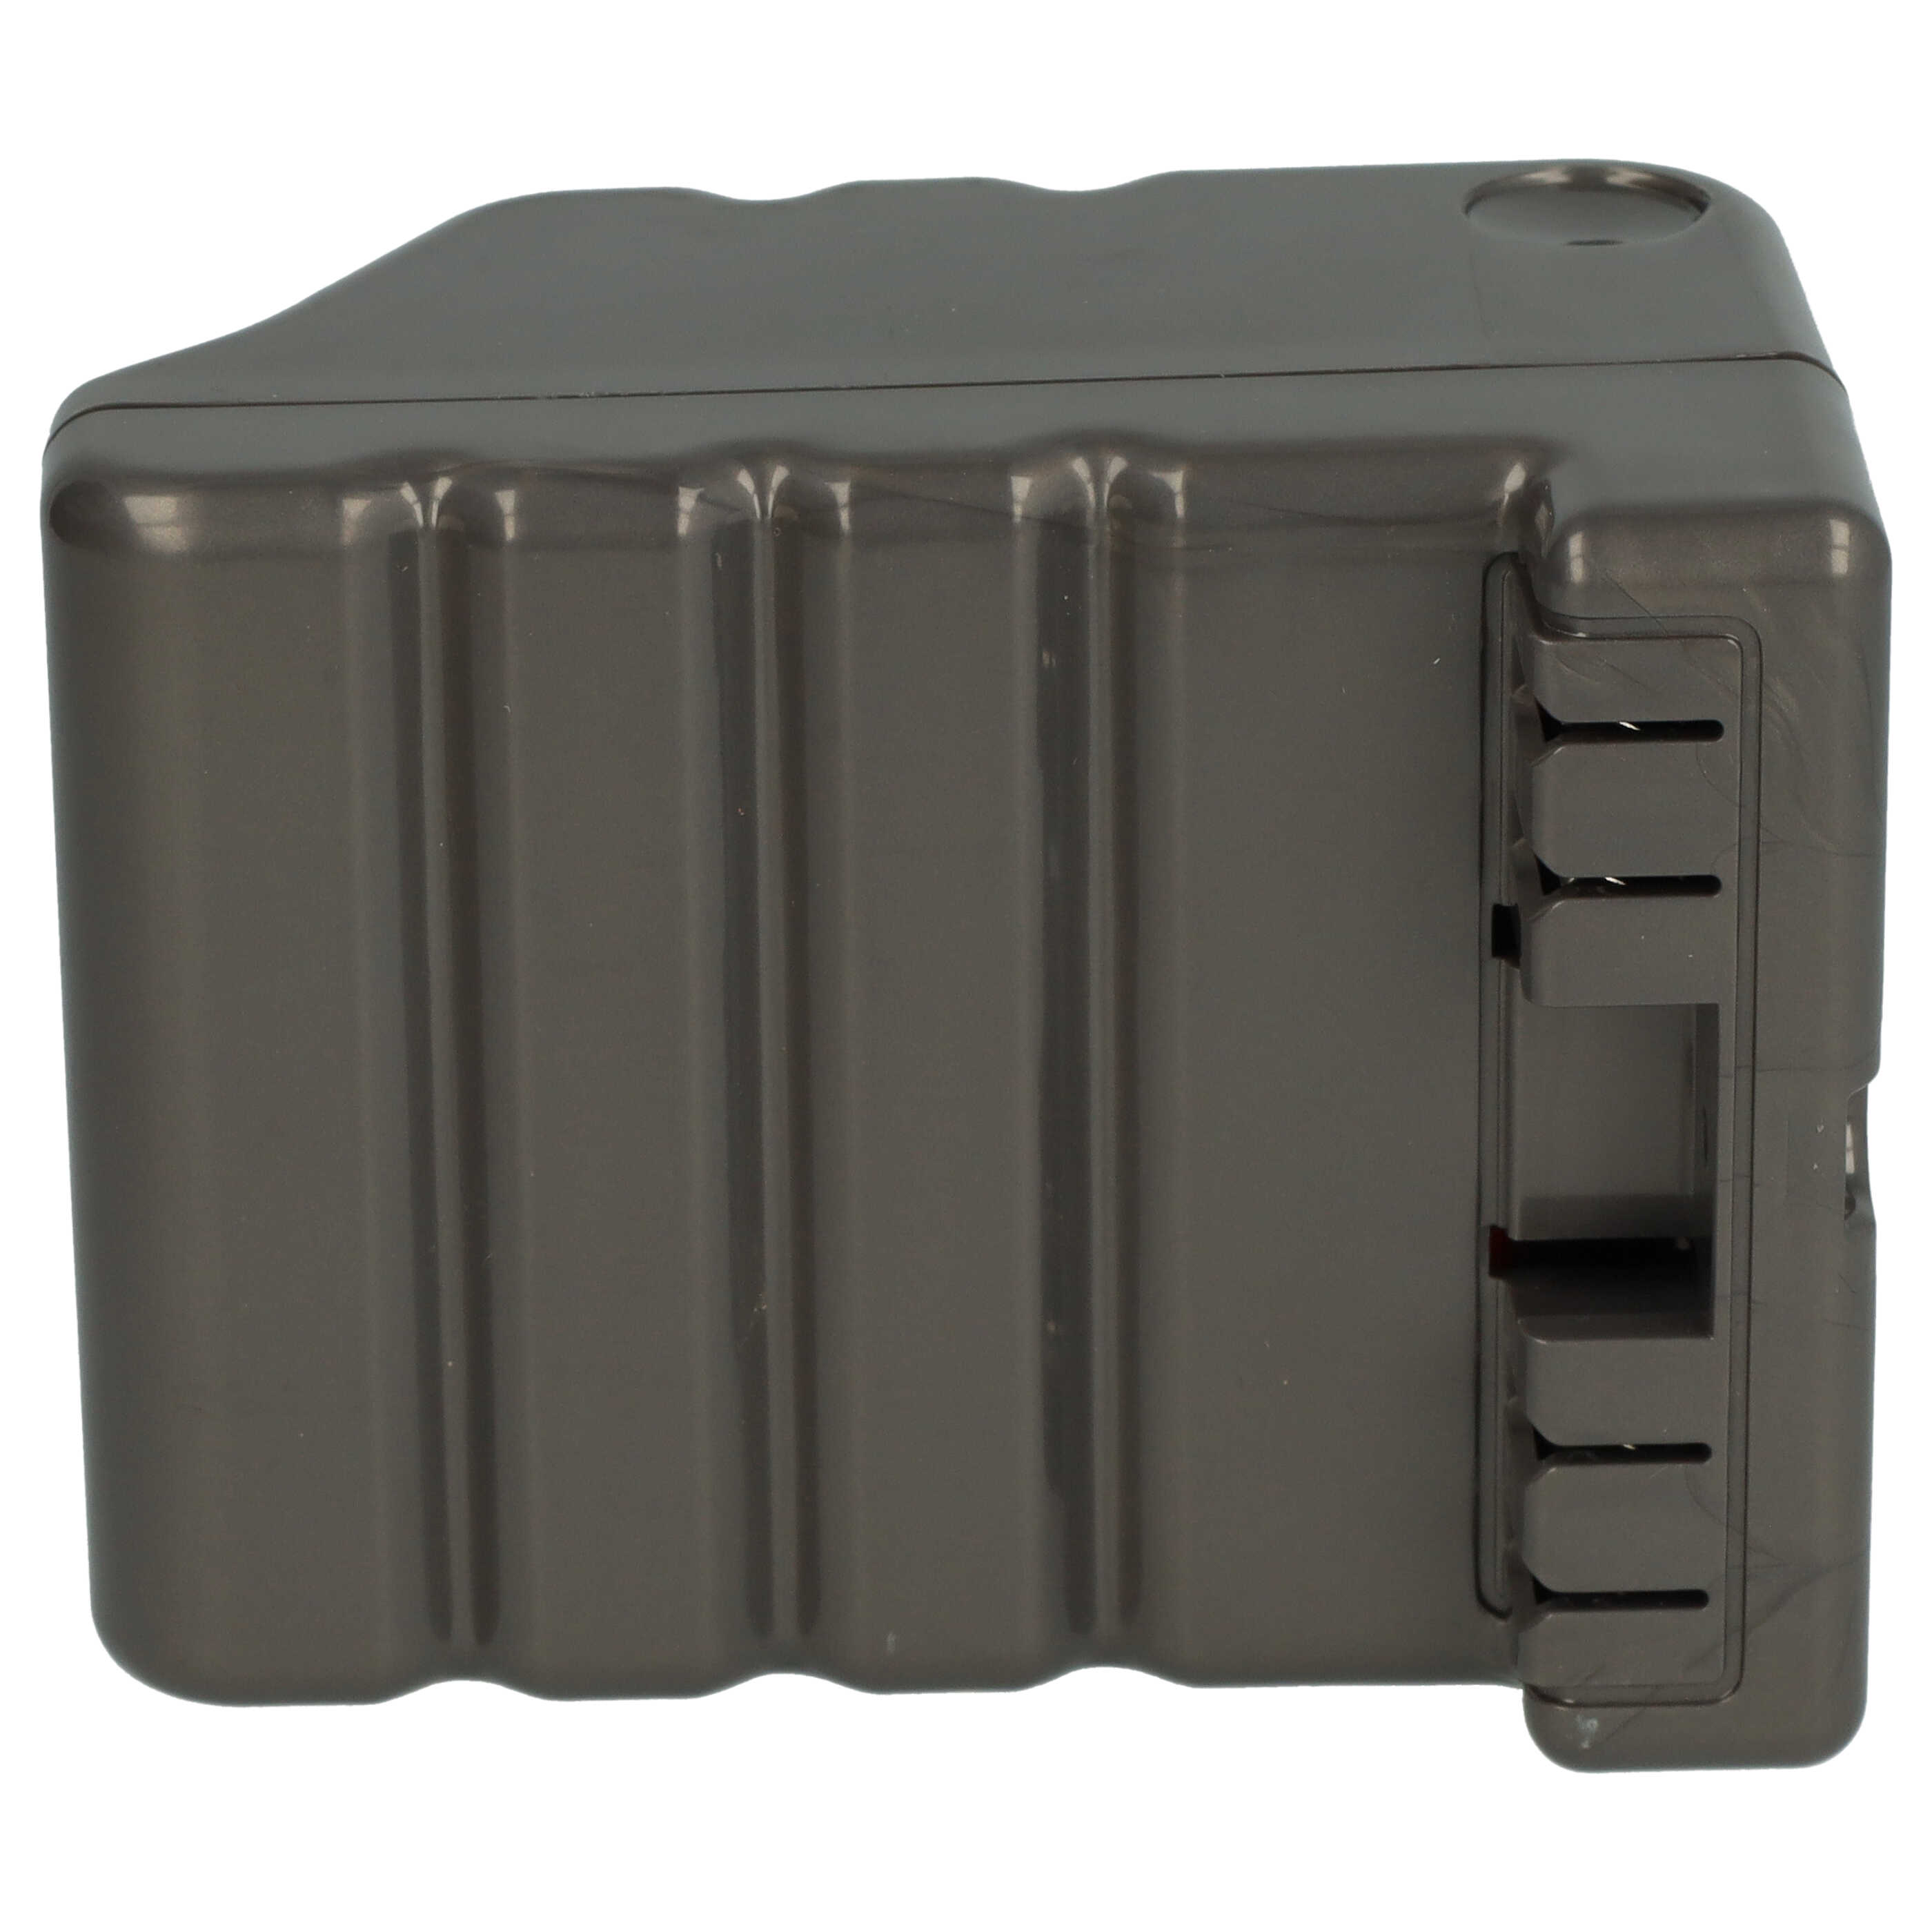 Batteria sostituisce Dyson 970049-01, 968734-02 per robot aspiratore Dyson - 6600mAh 14,8V Li-Ion grigio scuro